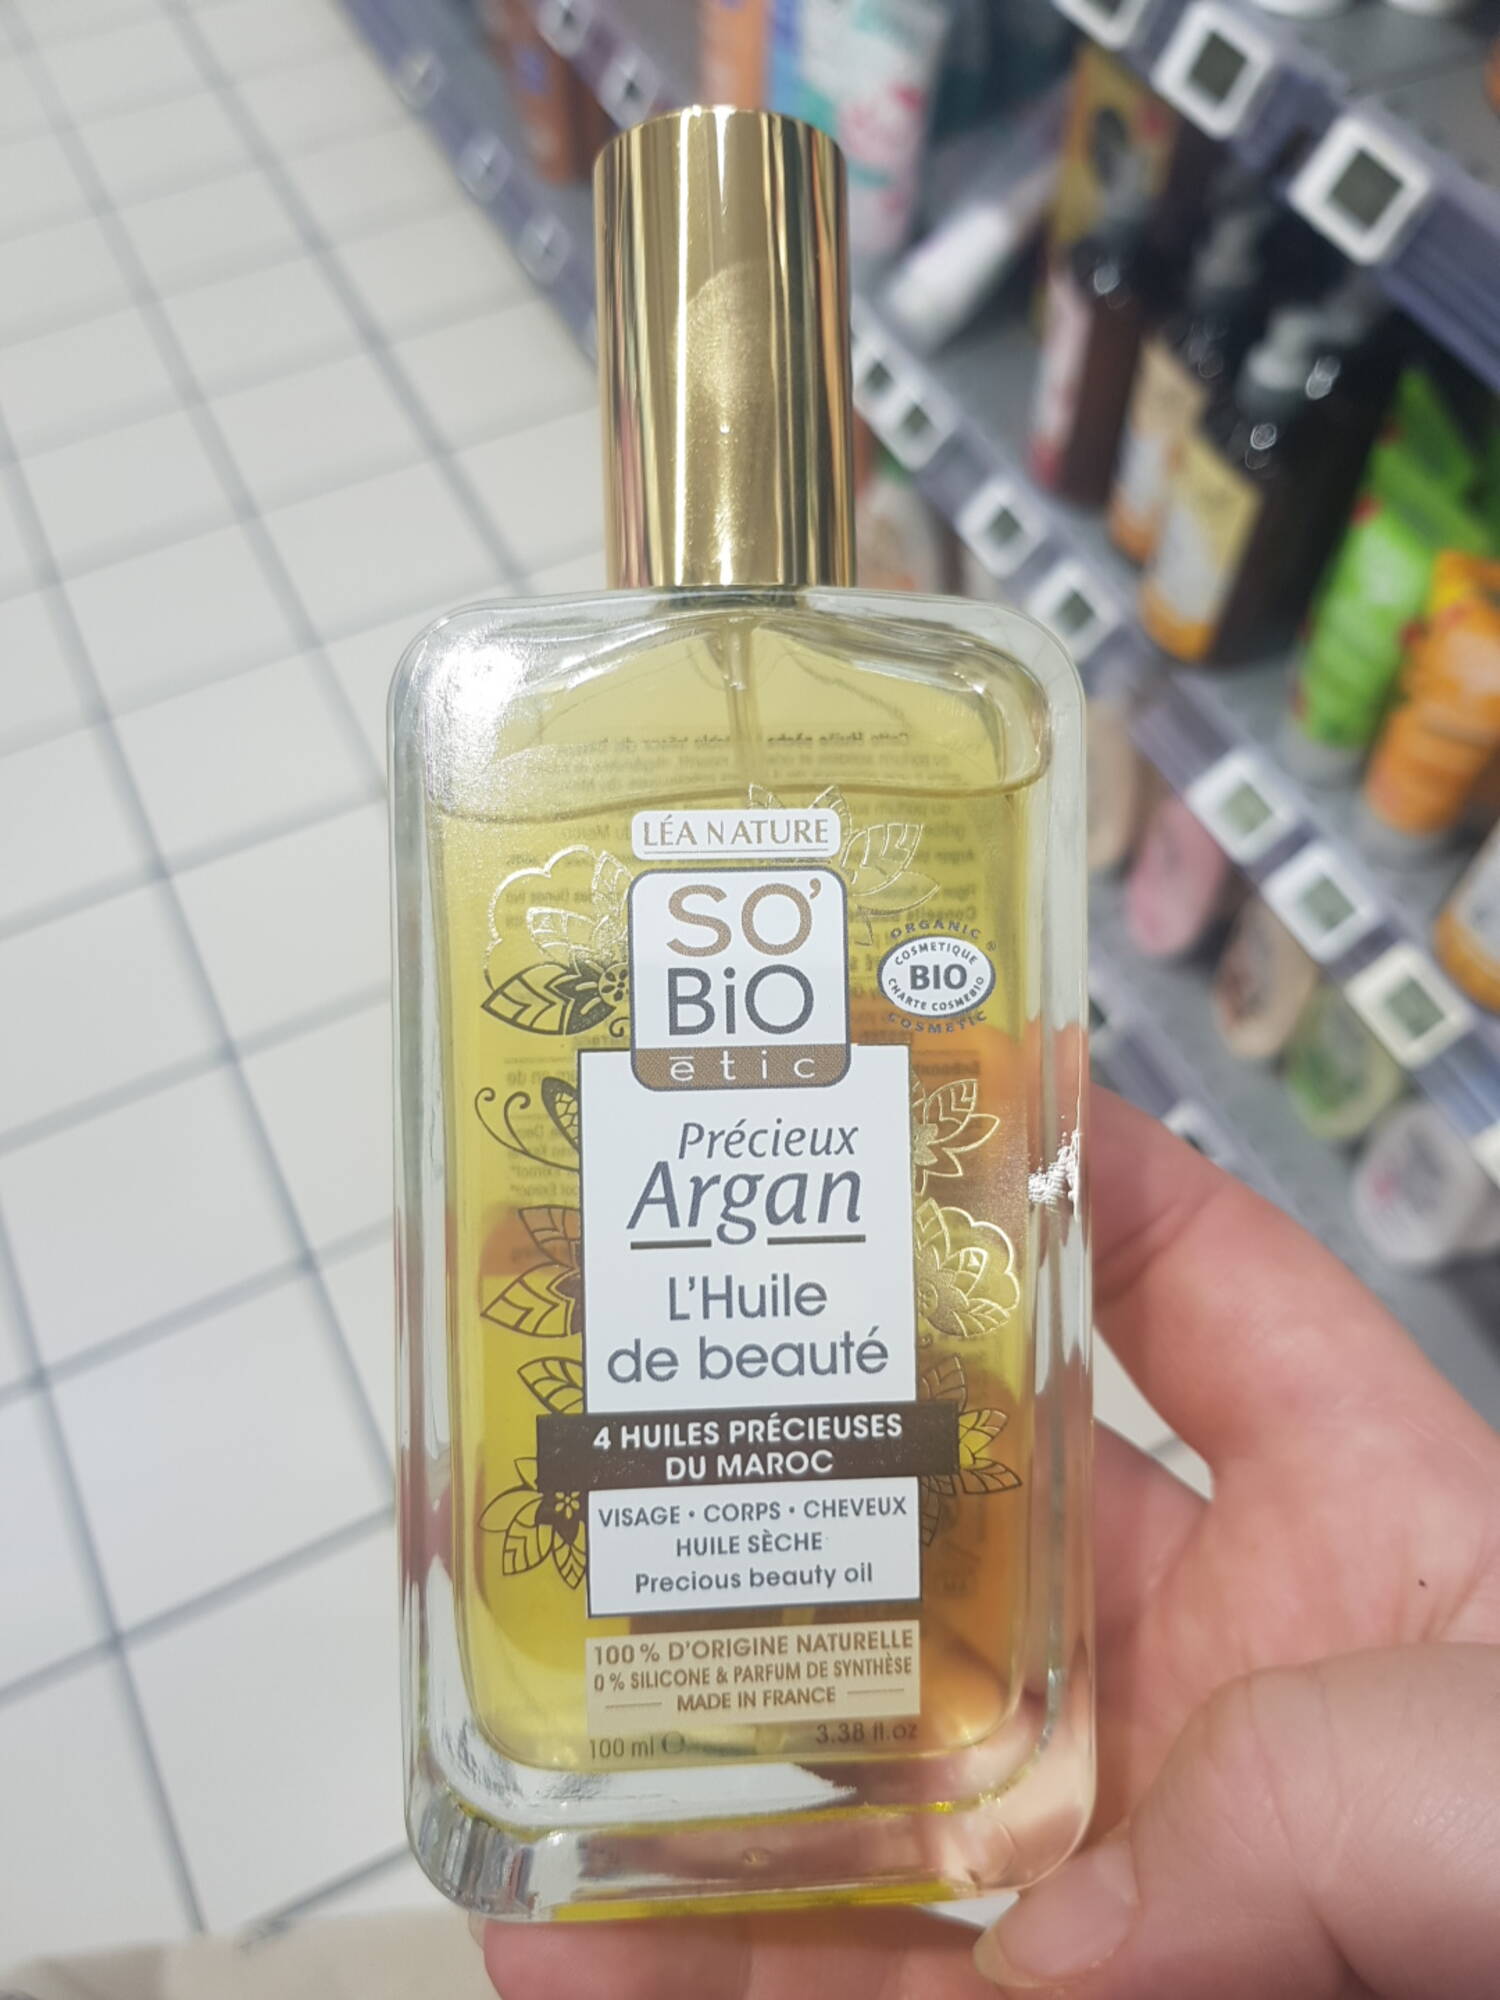 LÉA NATURE - So'bio étic - Précieux argan l'huile de beauté